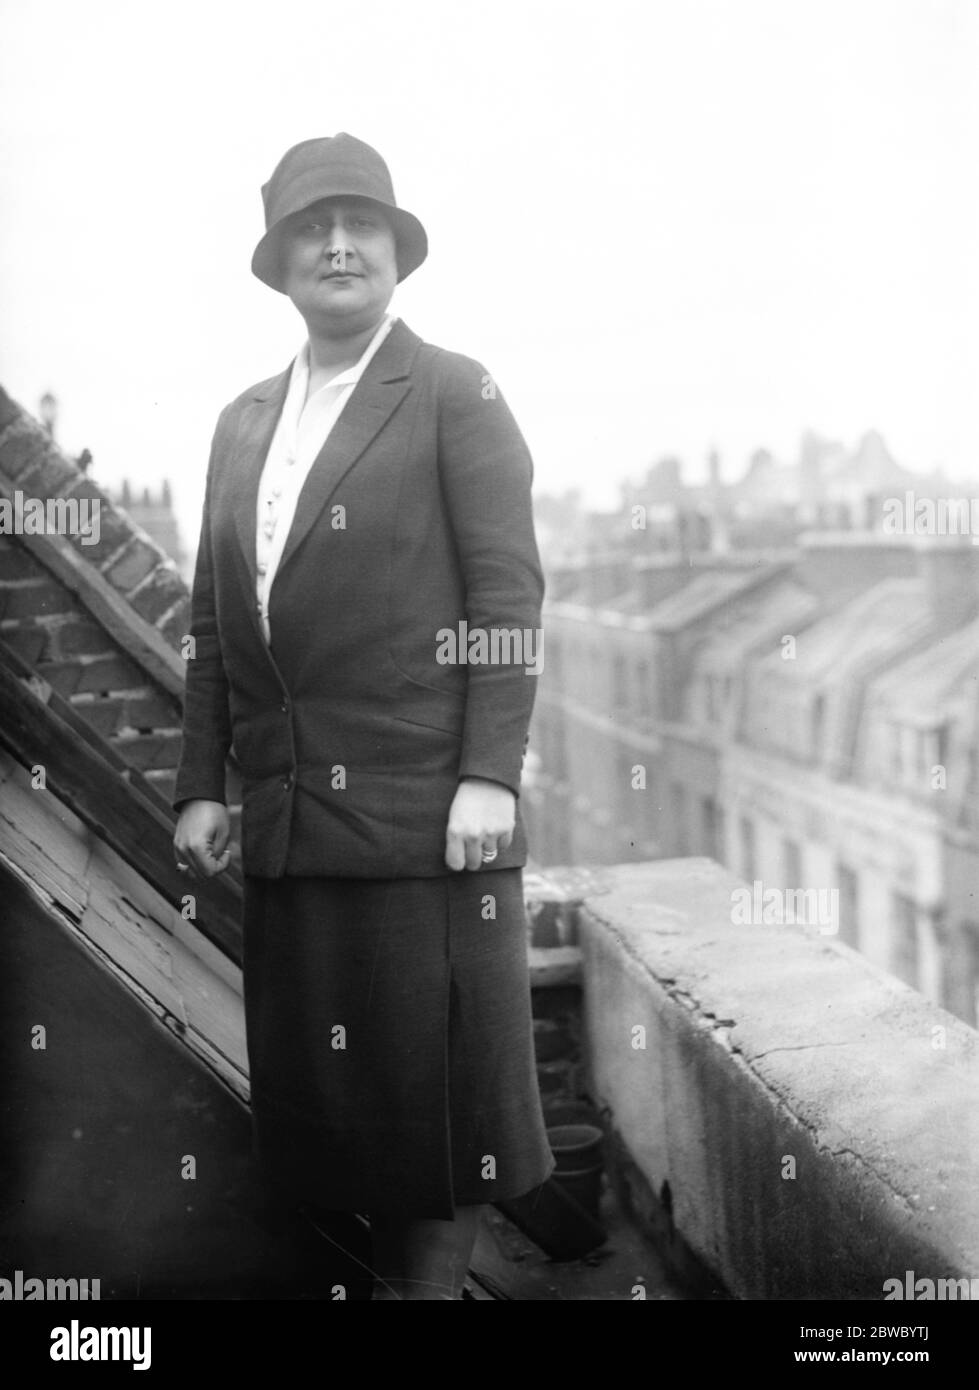 Prominente ägyptische Politikerin kommt in London. Mme Fahmy Bey Wissa, eine prominente Sozialreformerin und politische Führerin in Ägypten, ist gerade in London angekommen. 23 Juni 1926 Stockfoto